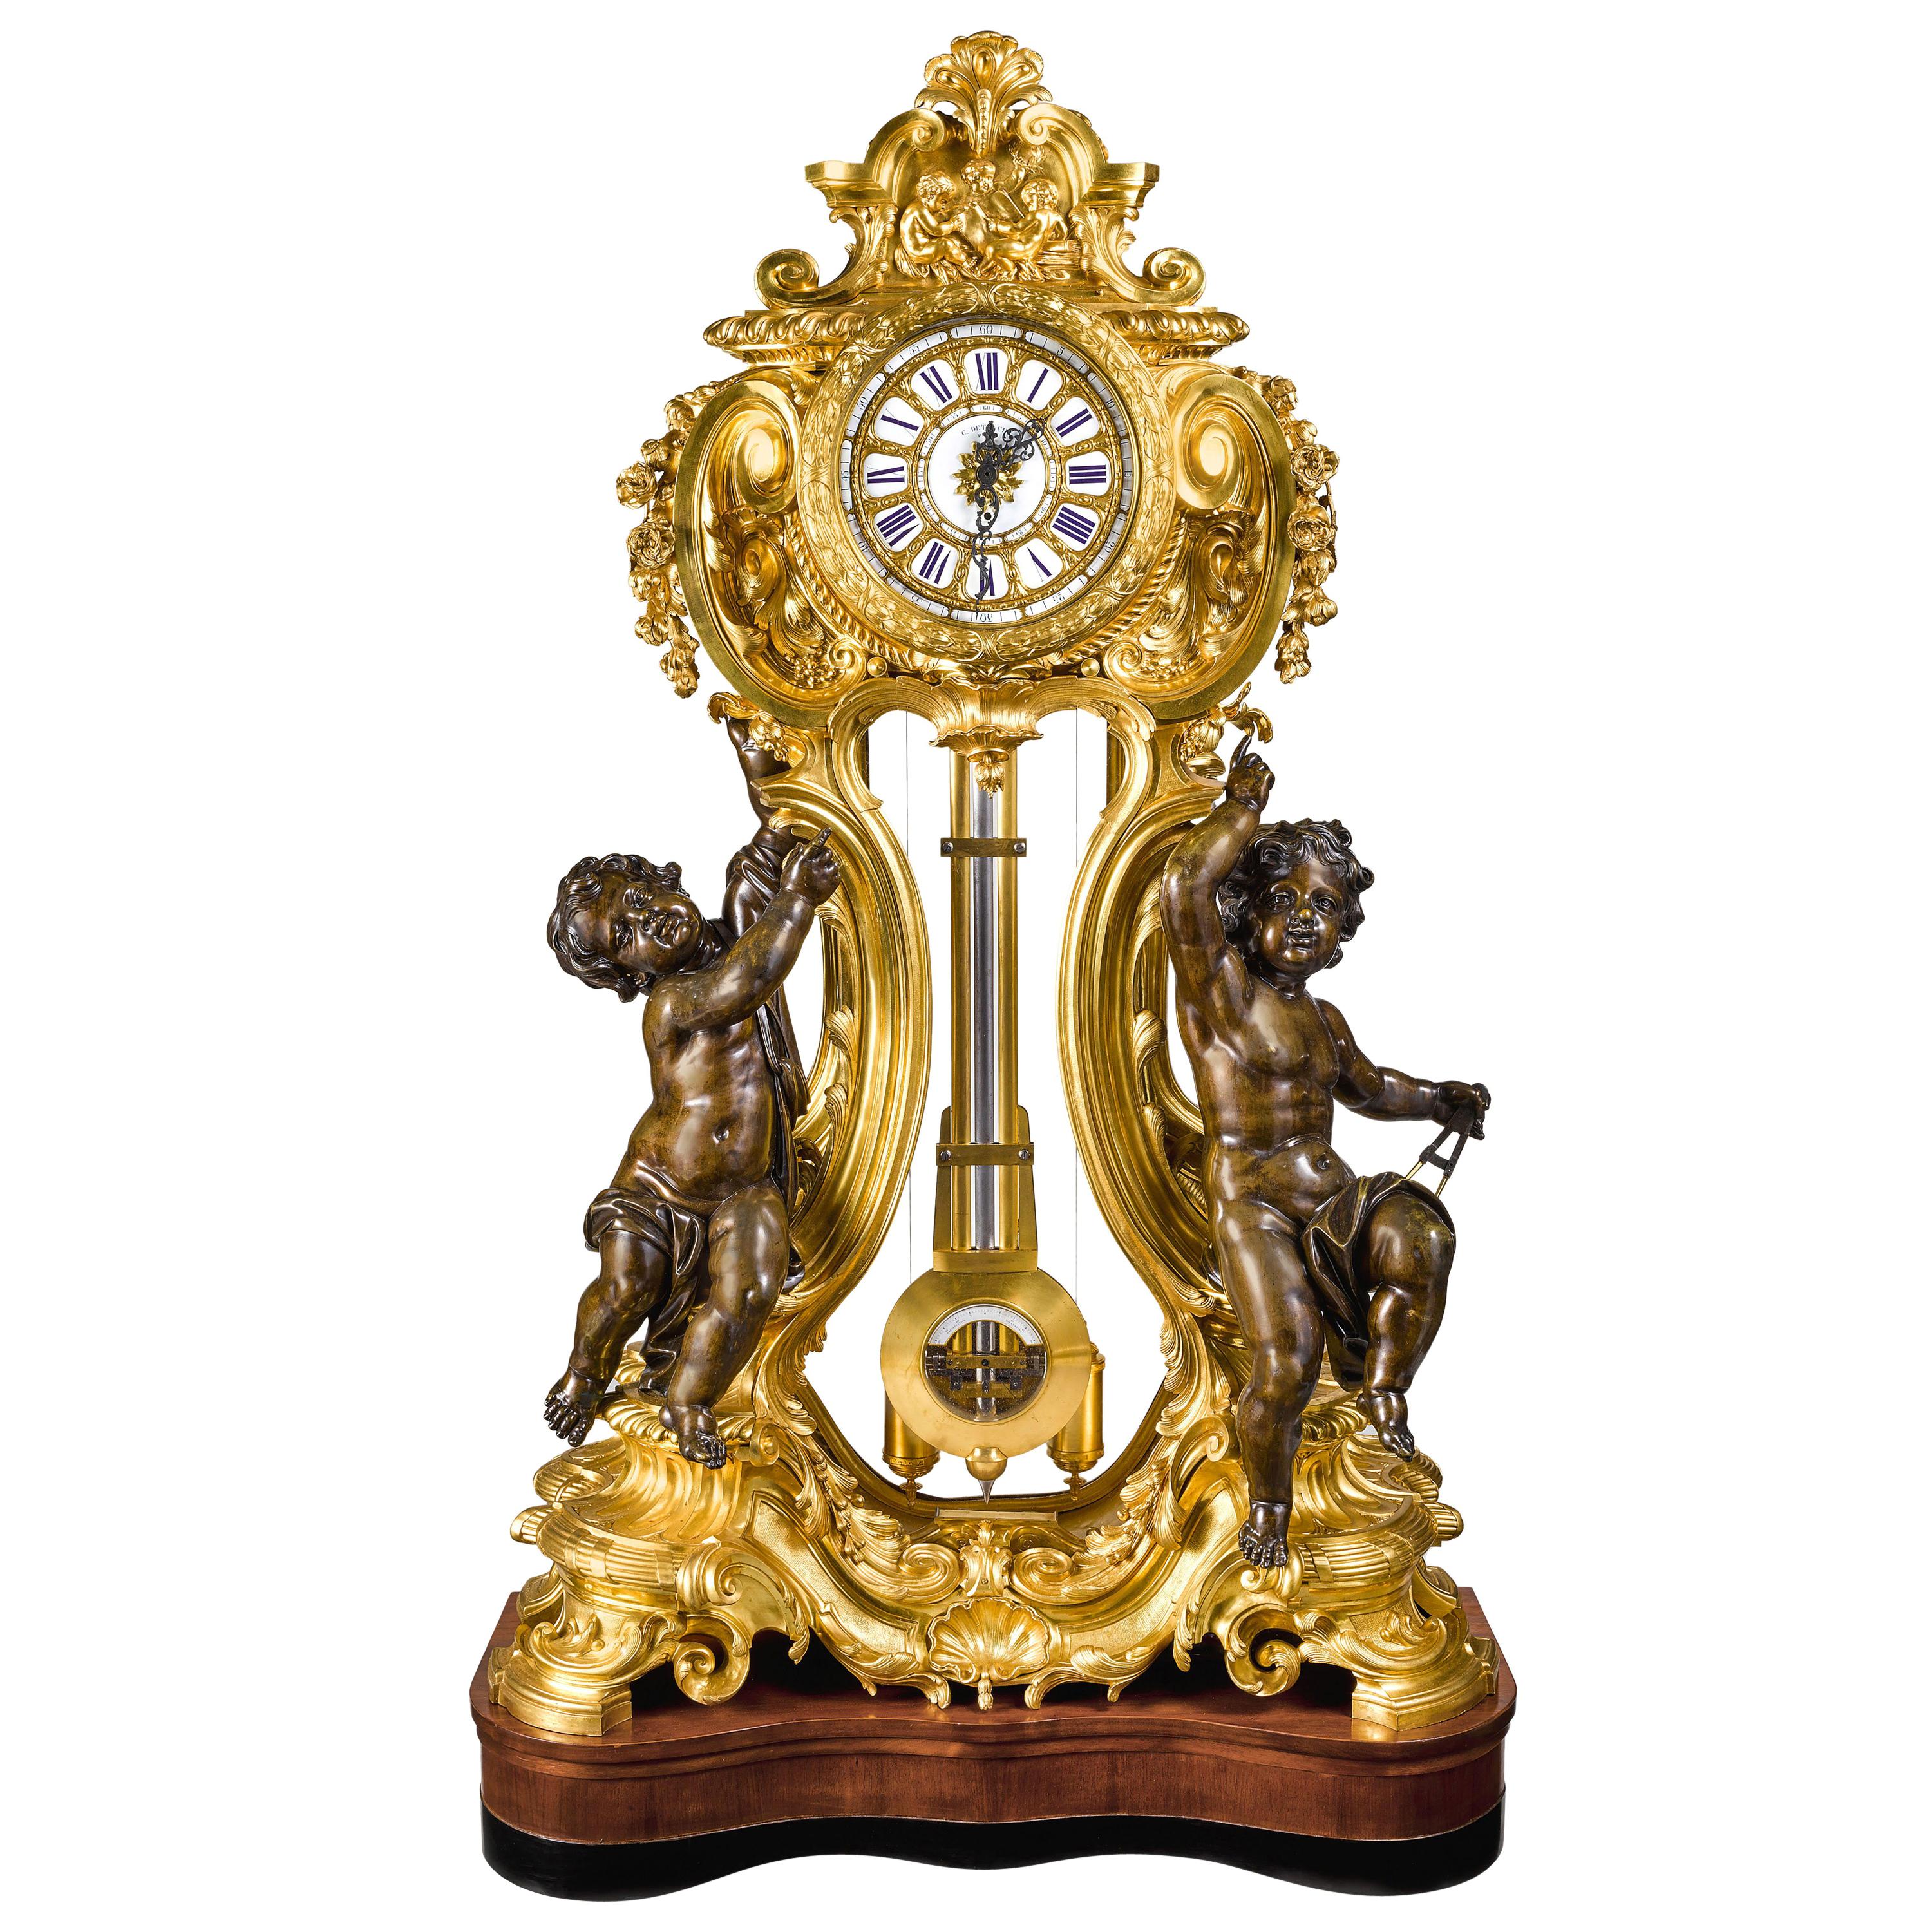 Une très rare et importante horloge régulatrice de parquet Napoléon III en bronze doré et patiné, par Louis-Constantin Detouche, Paris, vers 1850.

Le boîtier de la pendule est fait de bronze doré français très fin, avec deux très grands putti